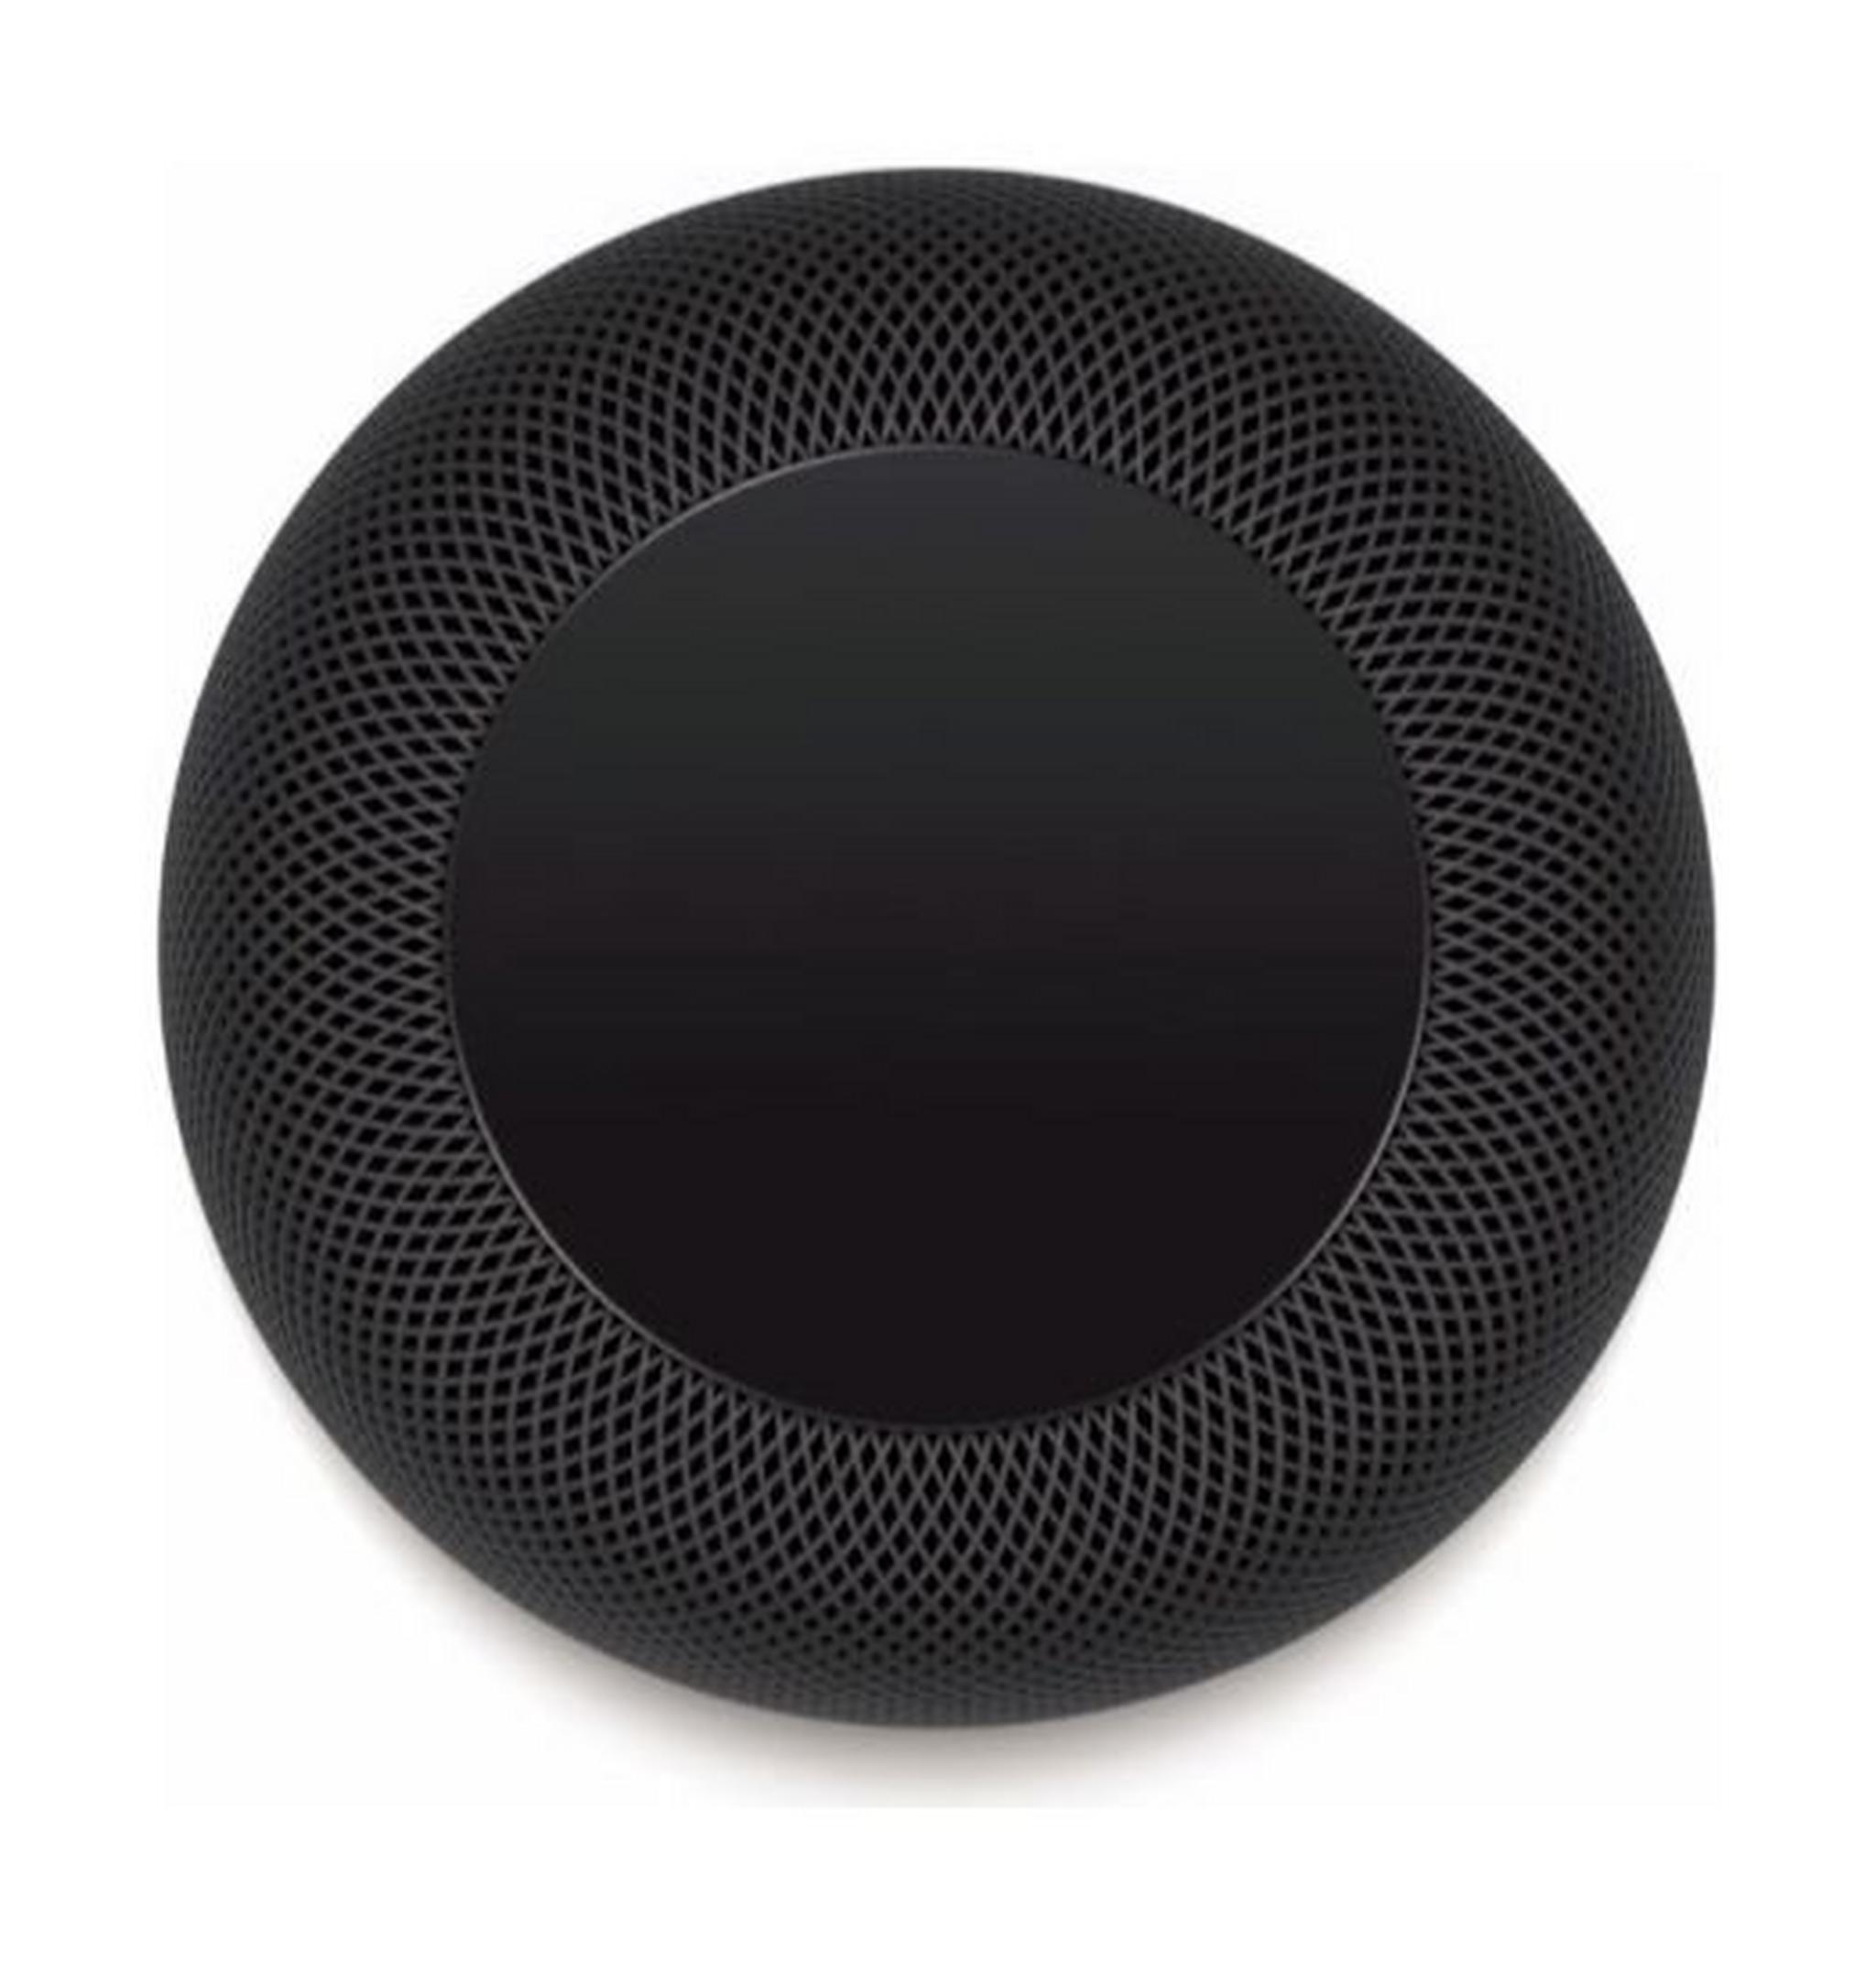 Apple HomePod Smart Speaker - Black